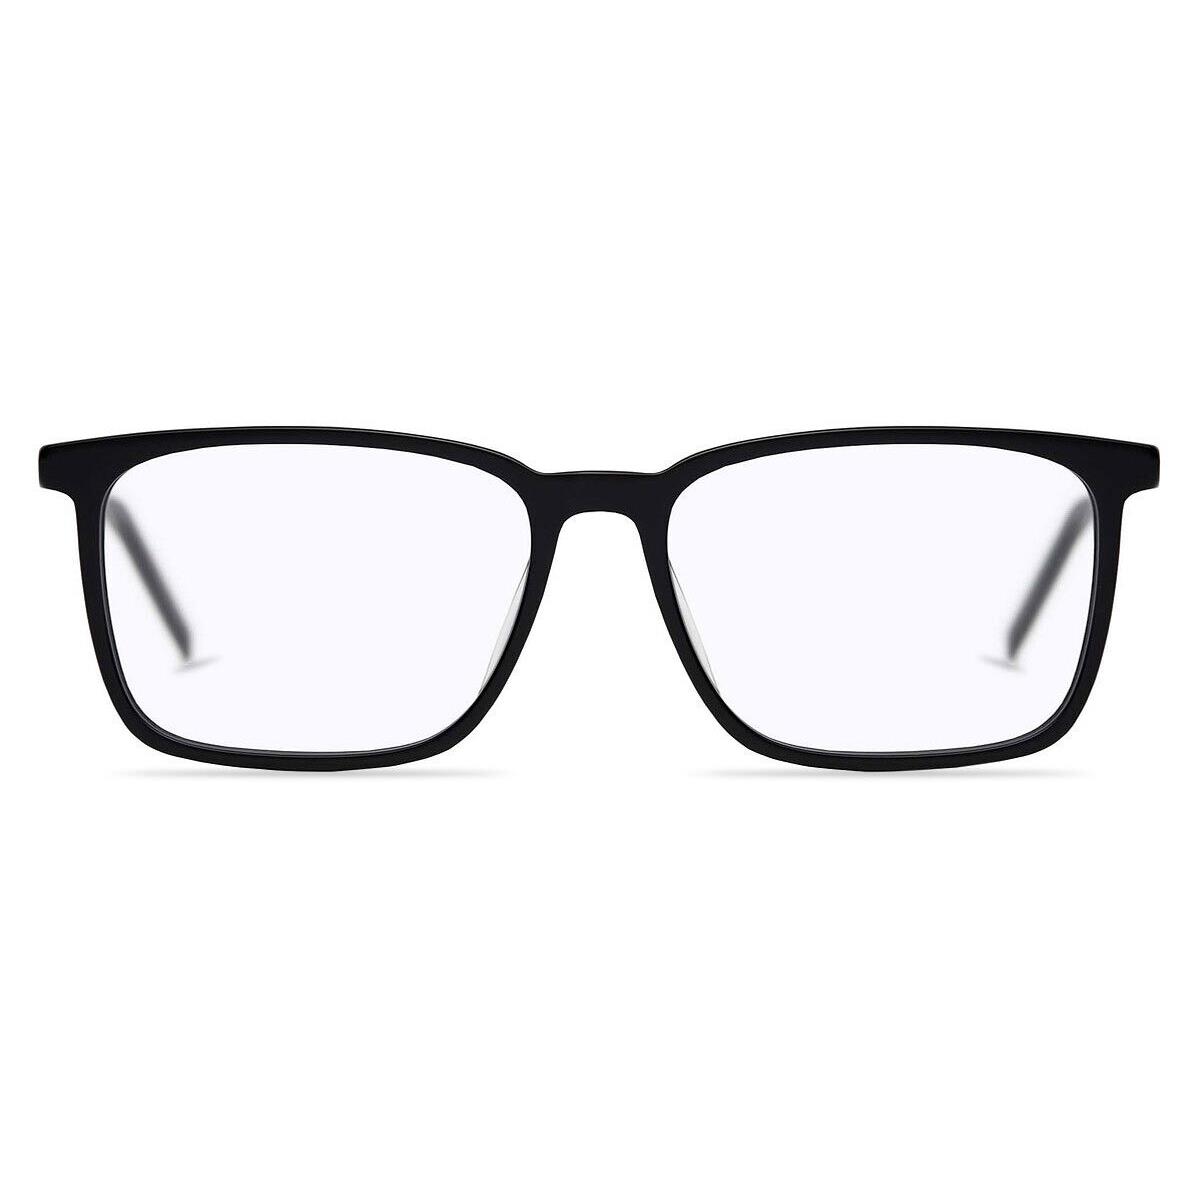 Hugo Boss 1097 Eyeglasses Men 0807 Black Square 55mm